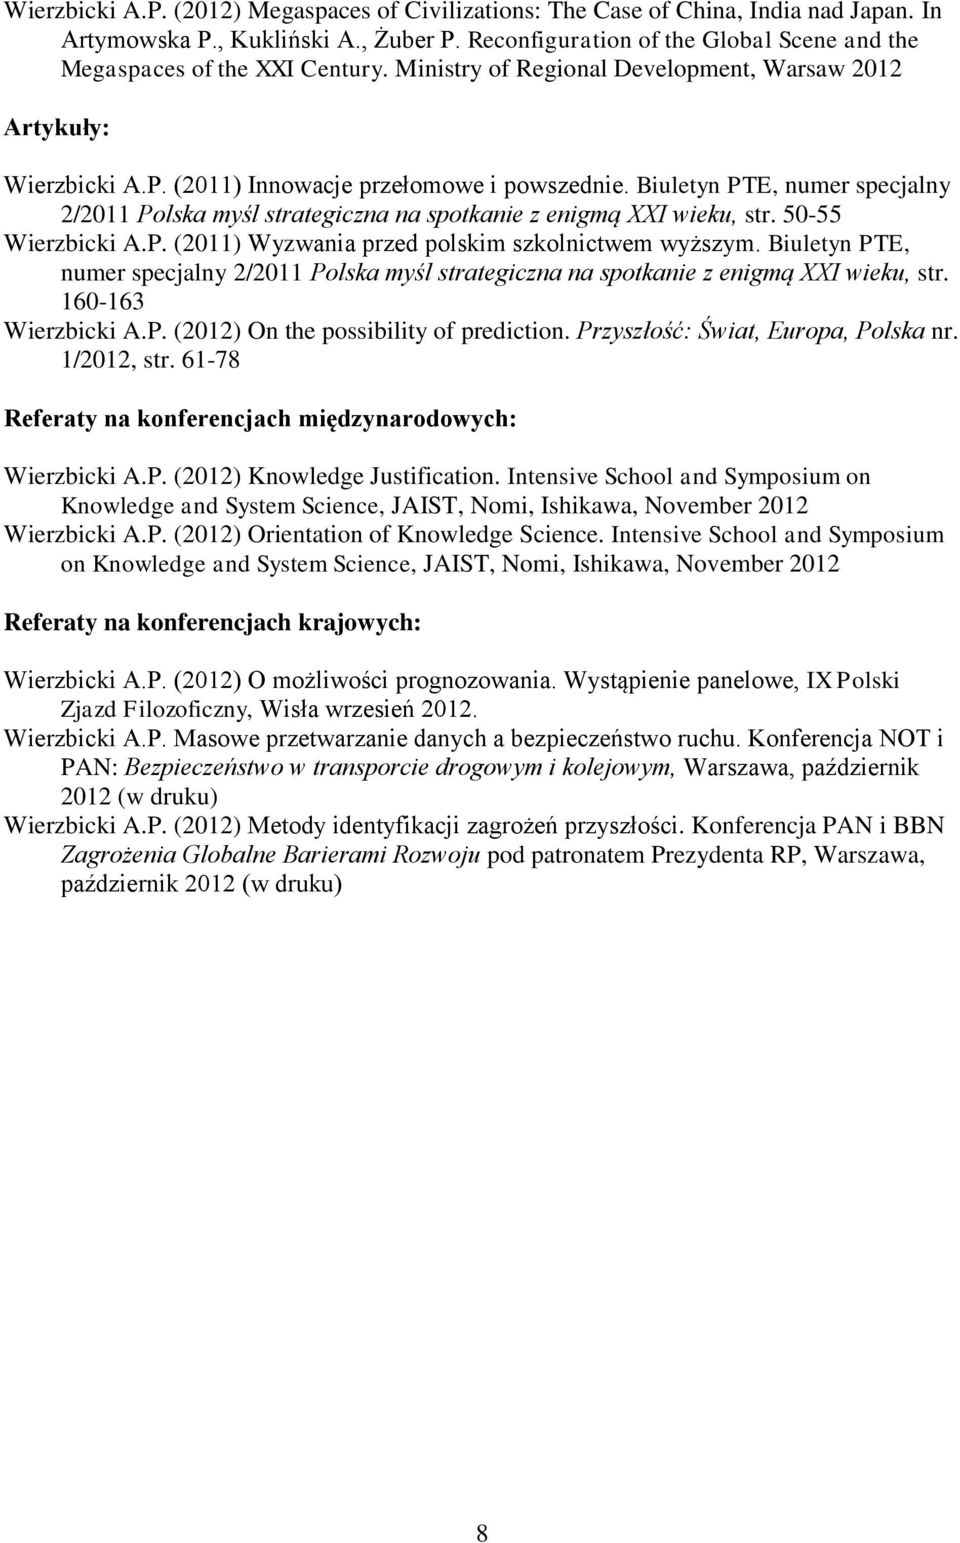 Biuletyn PTE, numer specjalny 2/2011 Polska myśl strategiczna na spotkanie z enigmą XXI wieku, str. 50-55 Wierzbicki A.P. (2011) Wyzwania przed polskim szkolnictwem wyższym.